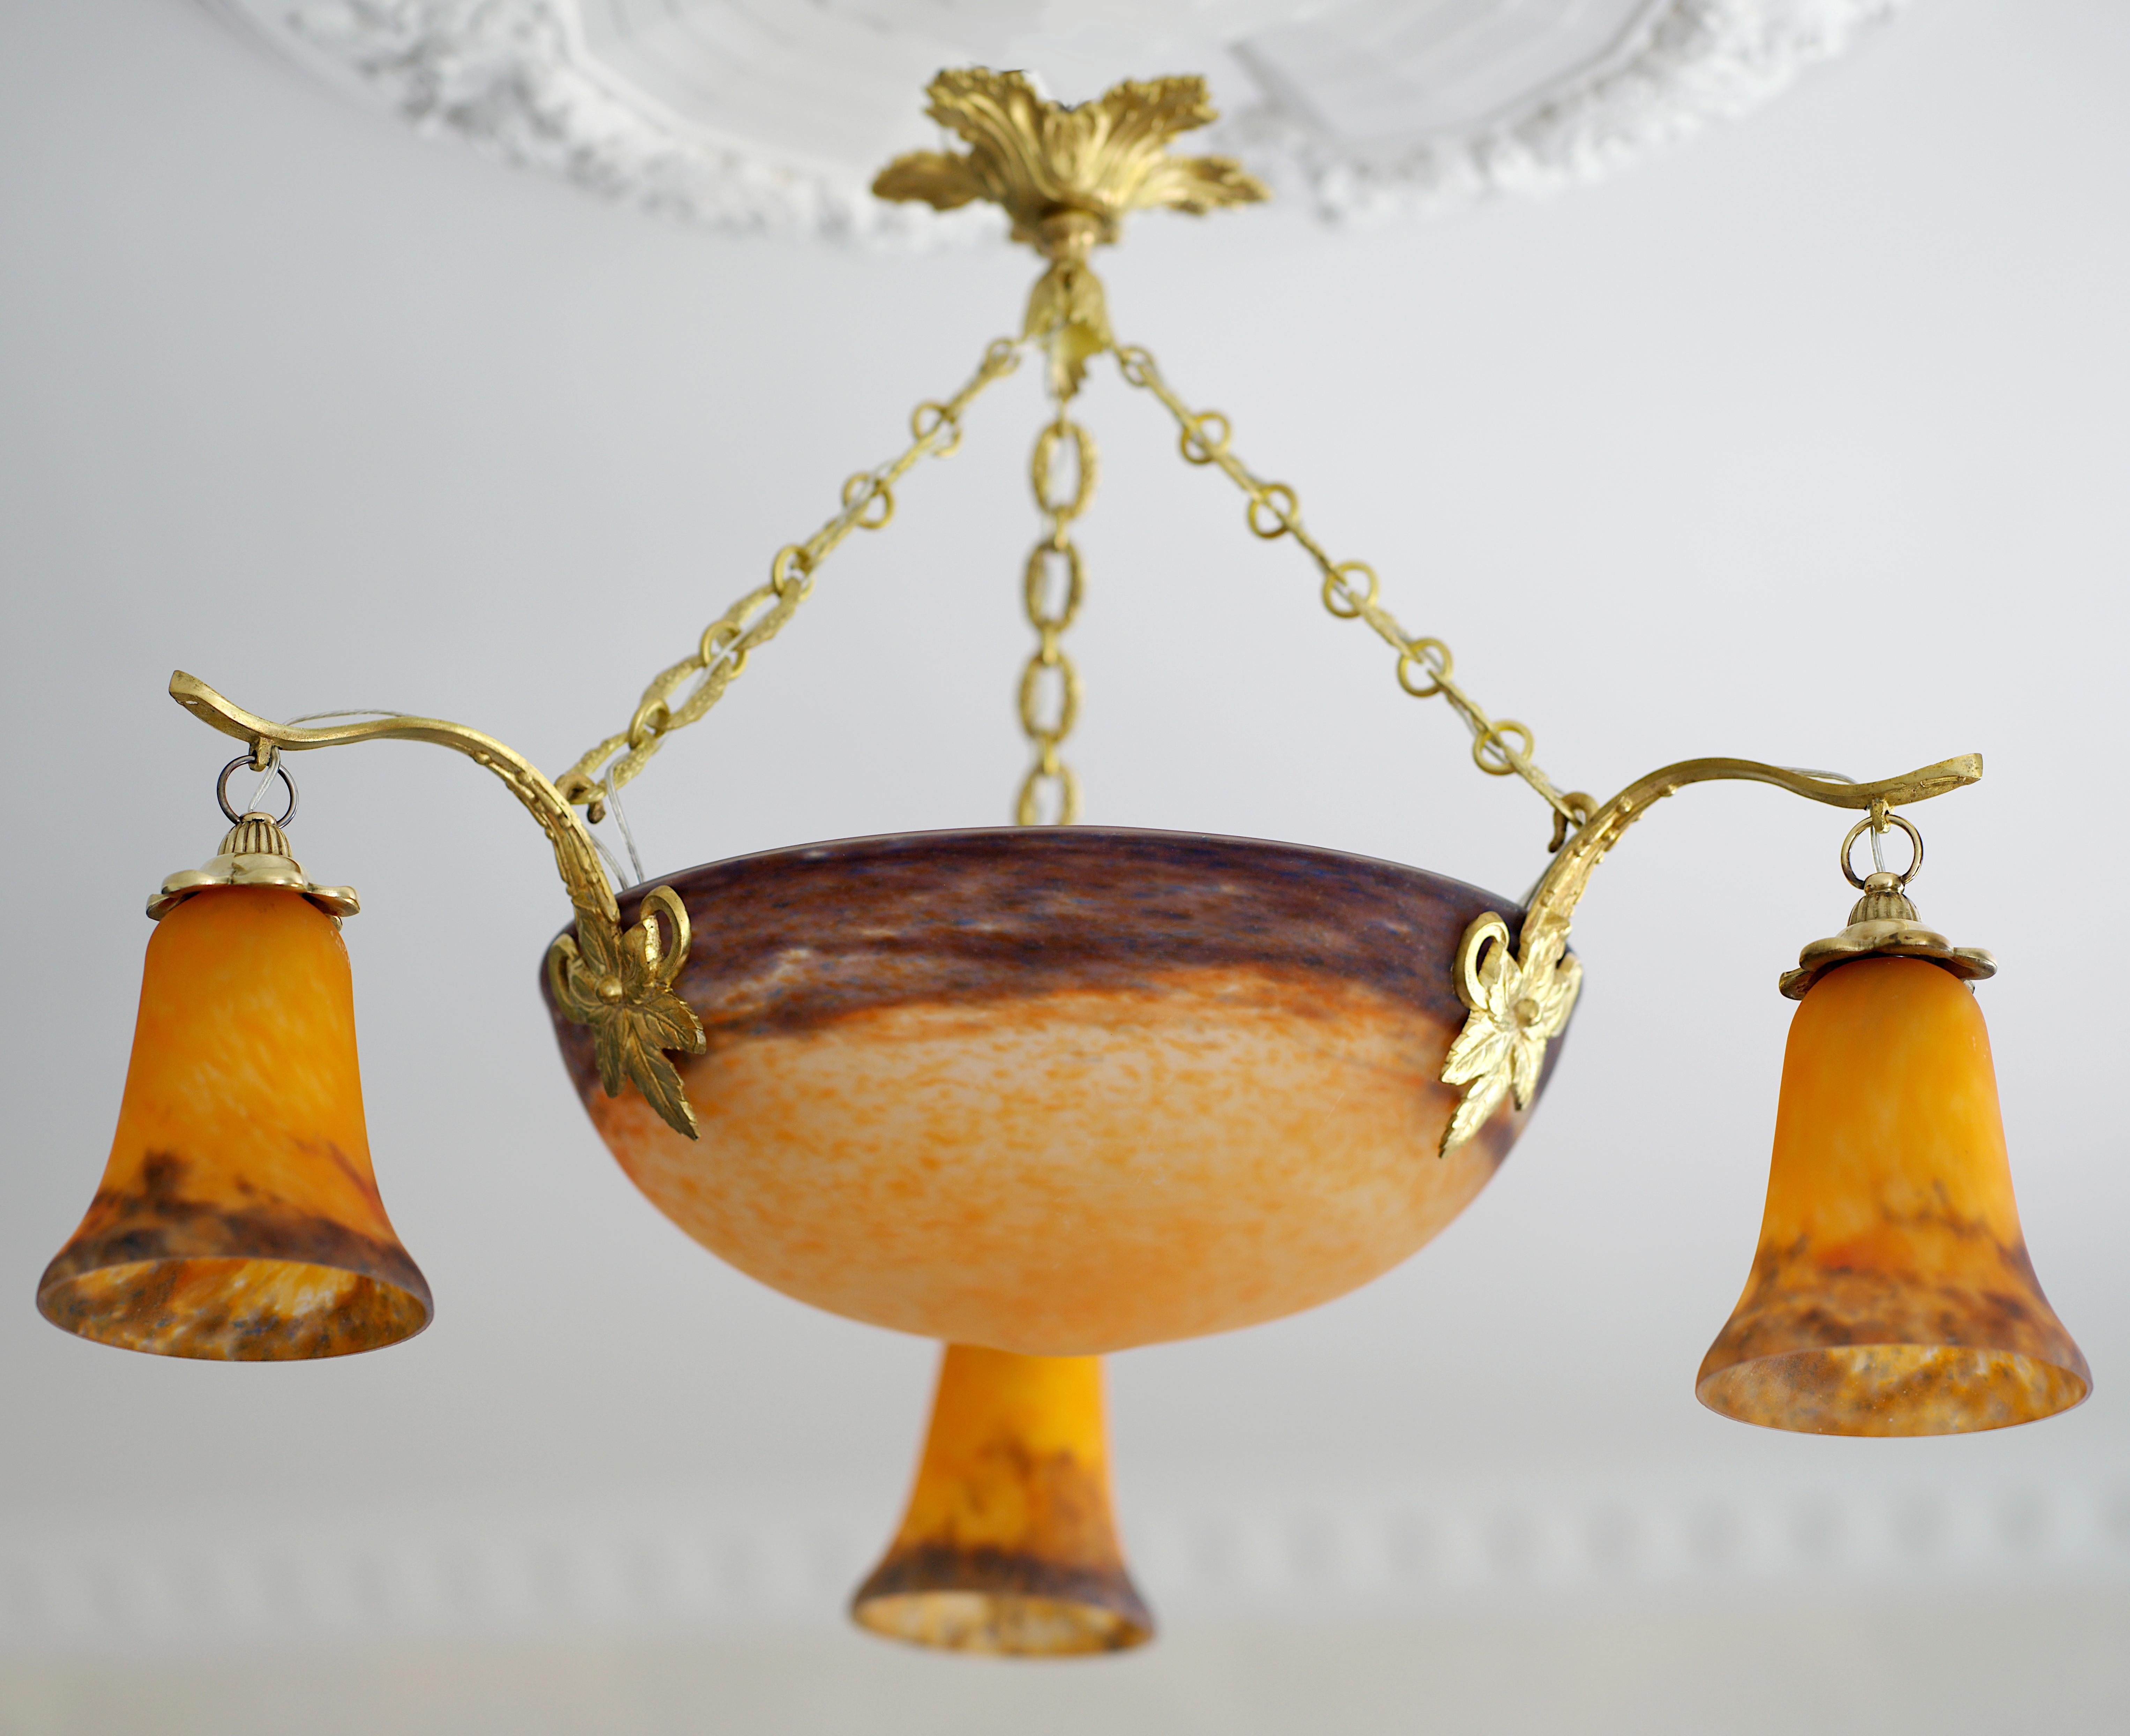 Französischer Art-Déco-Kronleuchter von Muller Freres, Croismare, Frankreich, 1920er Jahre. Gesprenkelte Glasschirme, die zwischen zwei Schichten gepudert sind, hängen an ihrer massiven Bronzehalterung von Petitot (Paris). Das Lila ist etwas